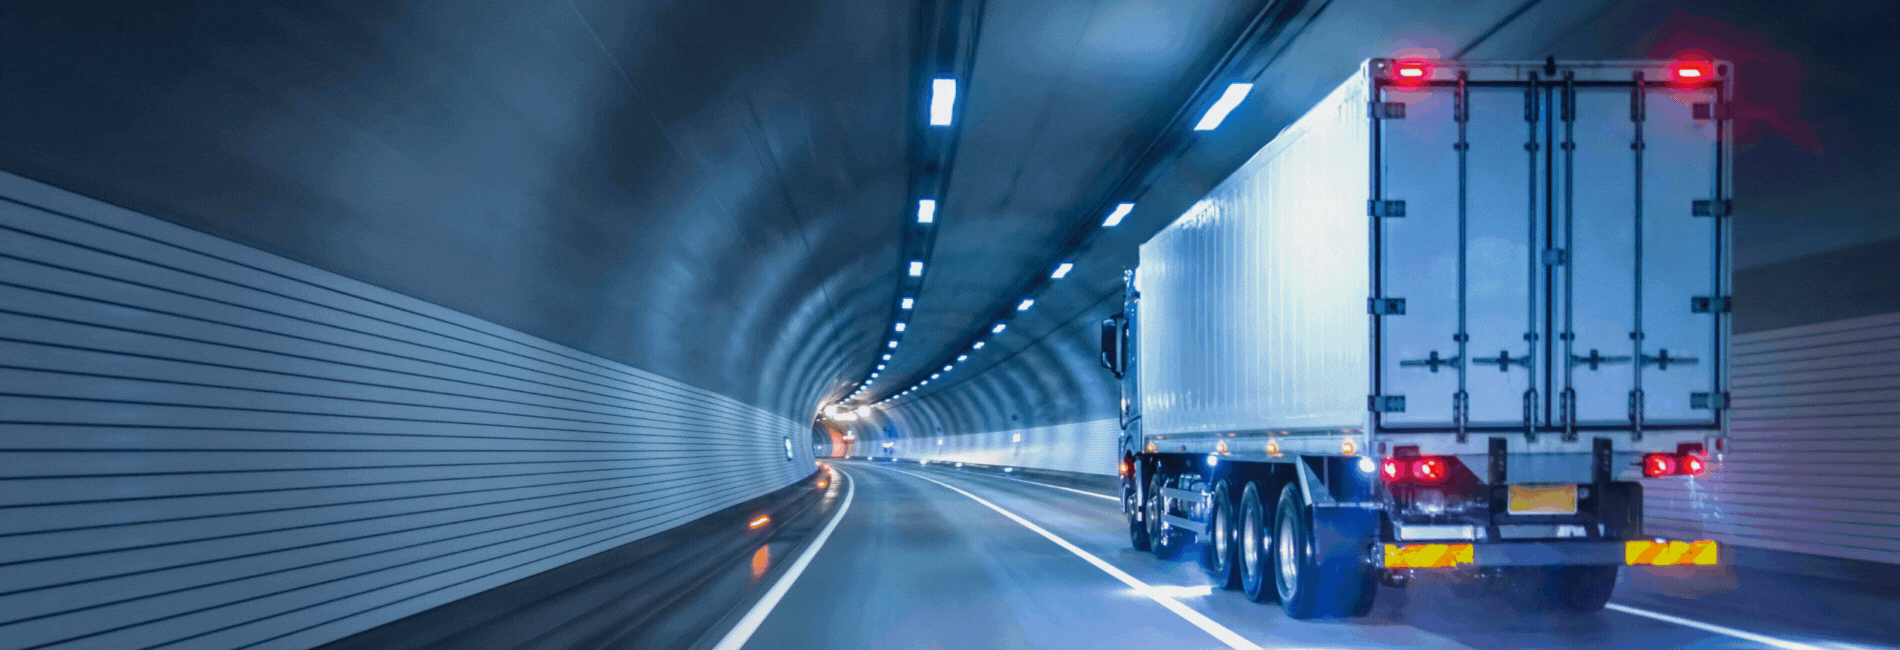 大窪運輸有限会社 運送会社 運送 運輸 トラック 長距離 運転手 輸送